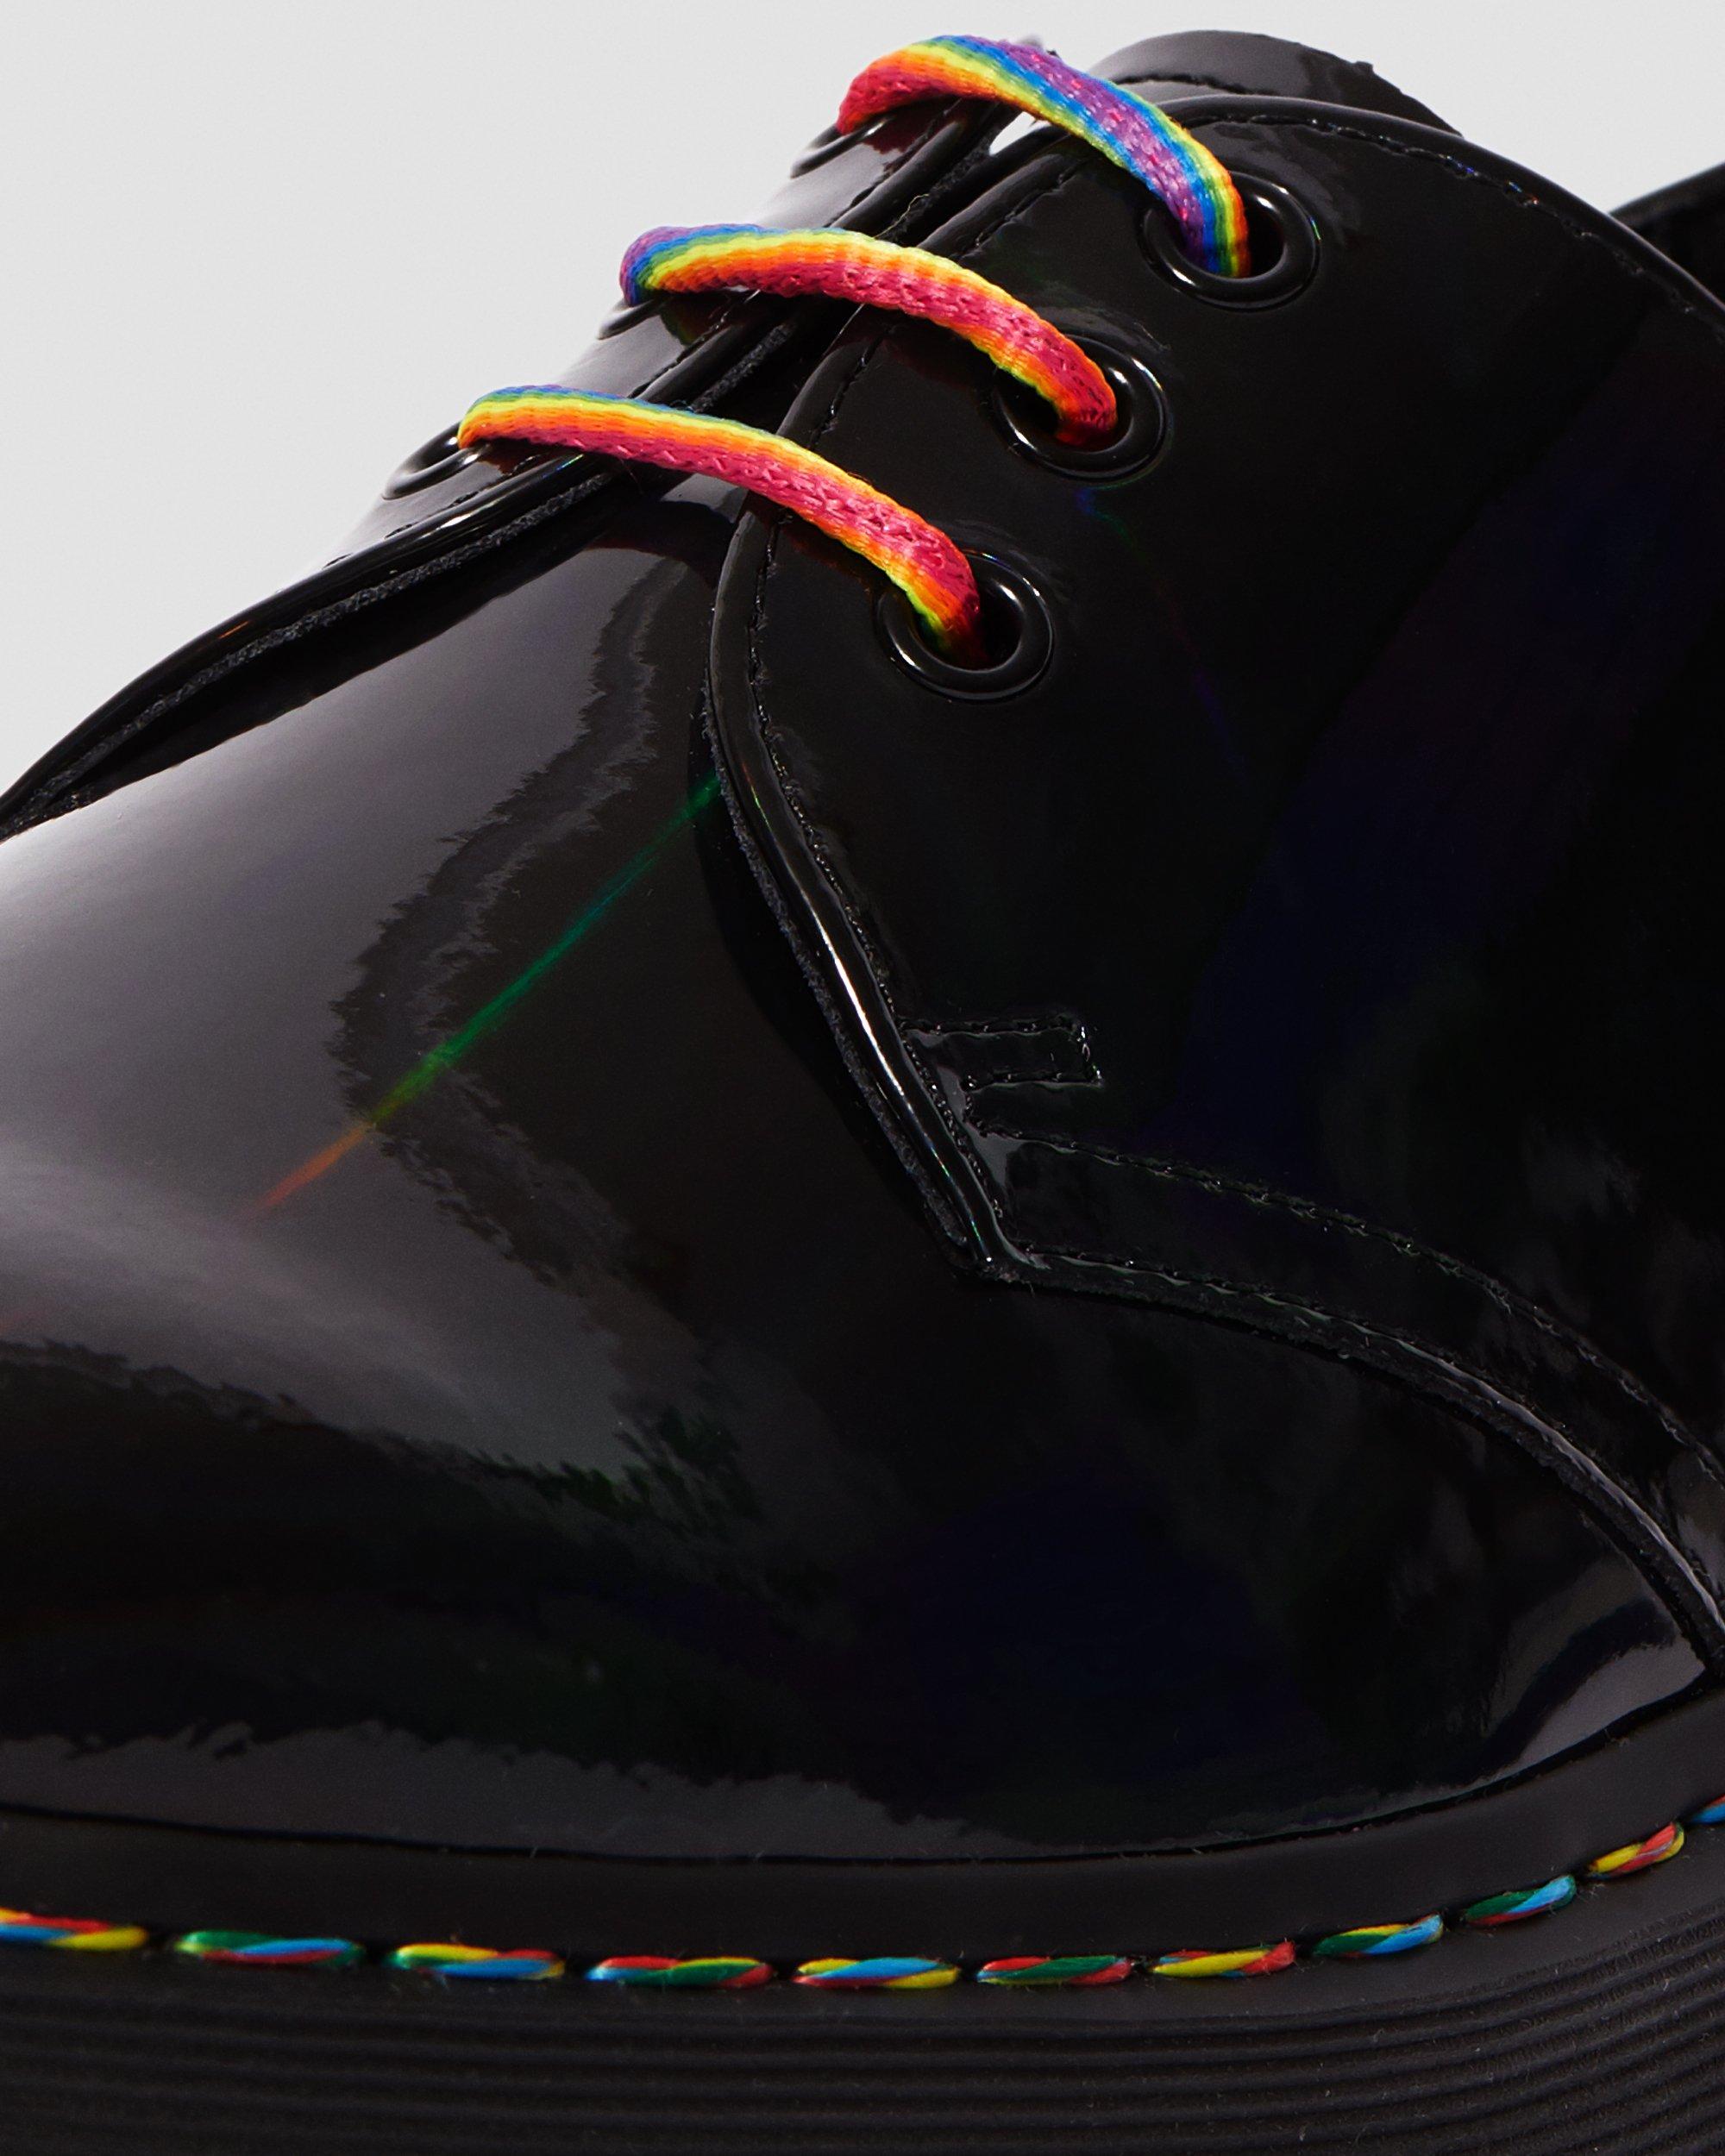 1461 Rainbow Patent Platform Shoes | Dr. Martens